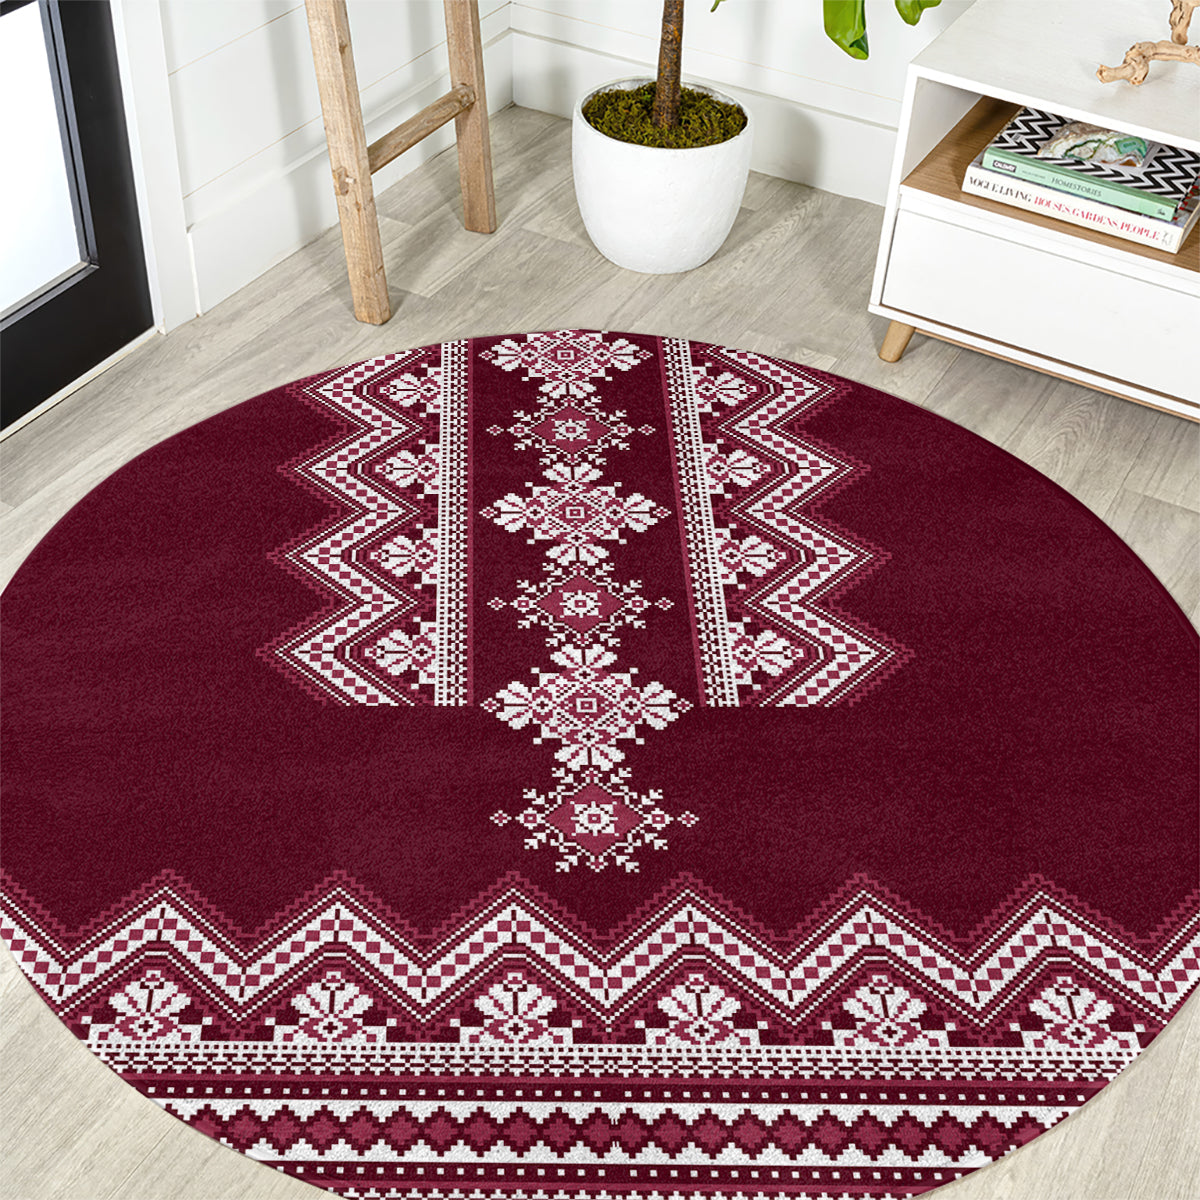 ukraine-folk-pattern-round-carpet-ukrainian-wine-red-version